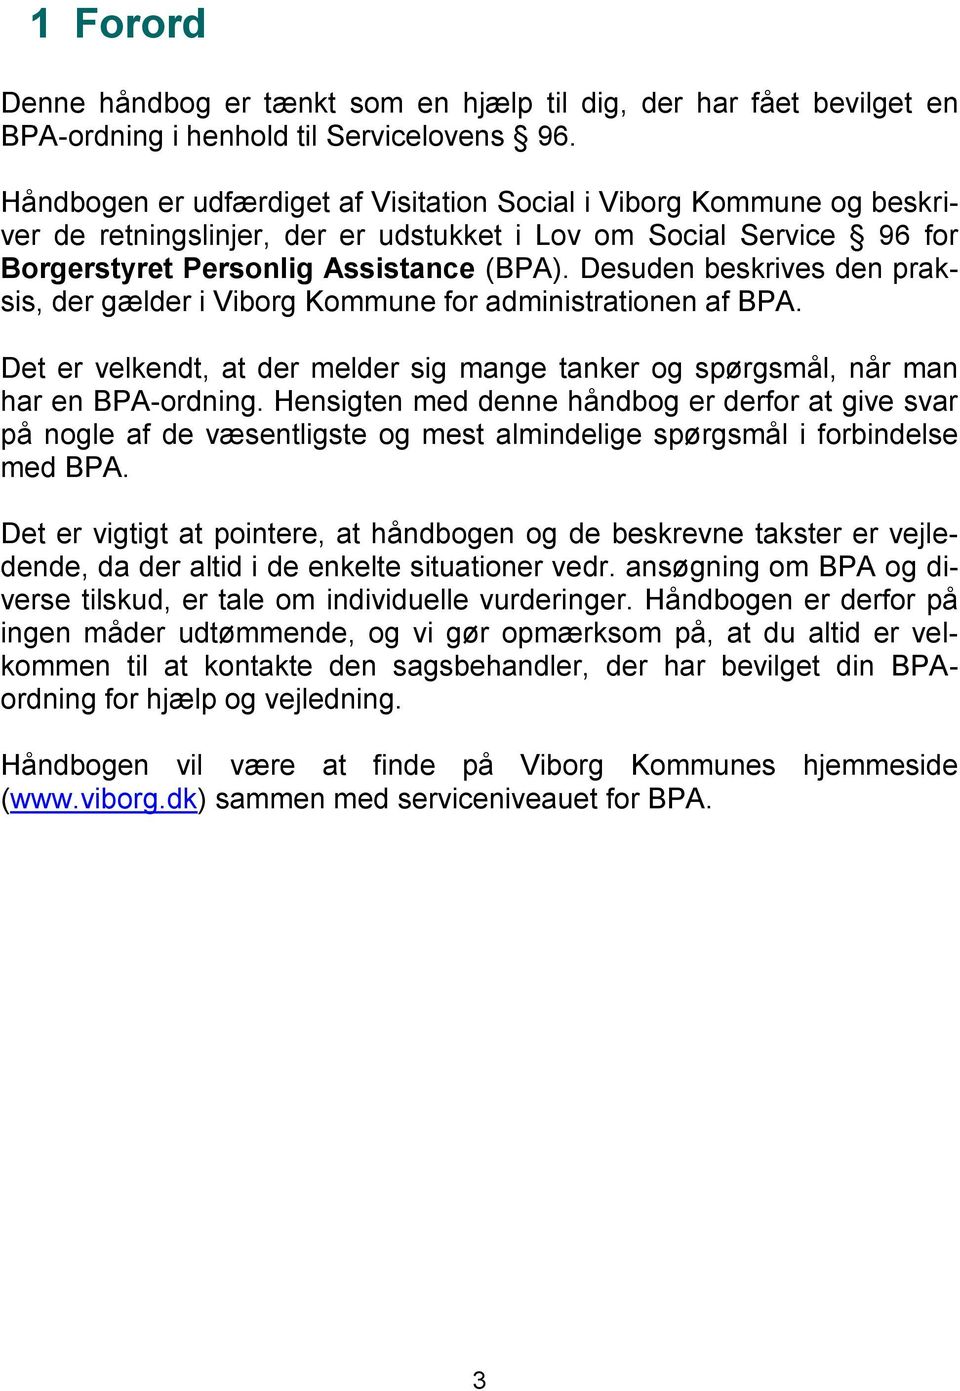 Desuden beskrives den praksis, der gælder i Viborg Kommune for administrationen af BPA. Det er velkendt, at der melder sig mange tanker og spørgsmål, når man har en BPA-ordning.